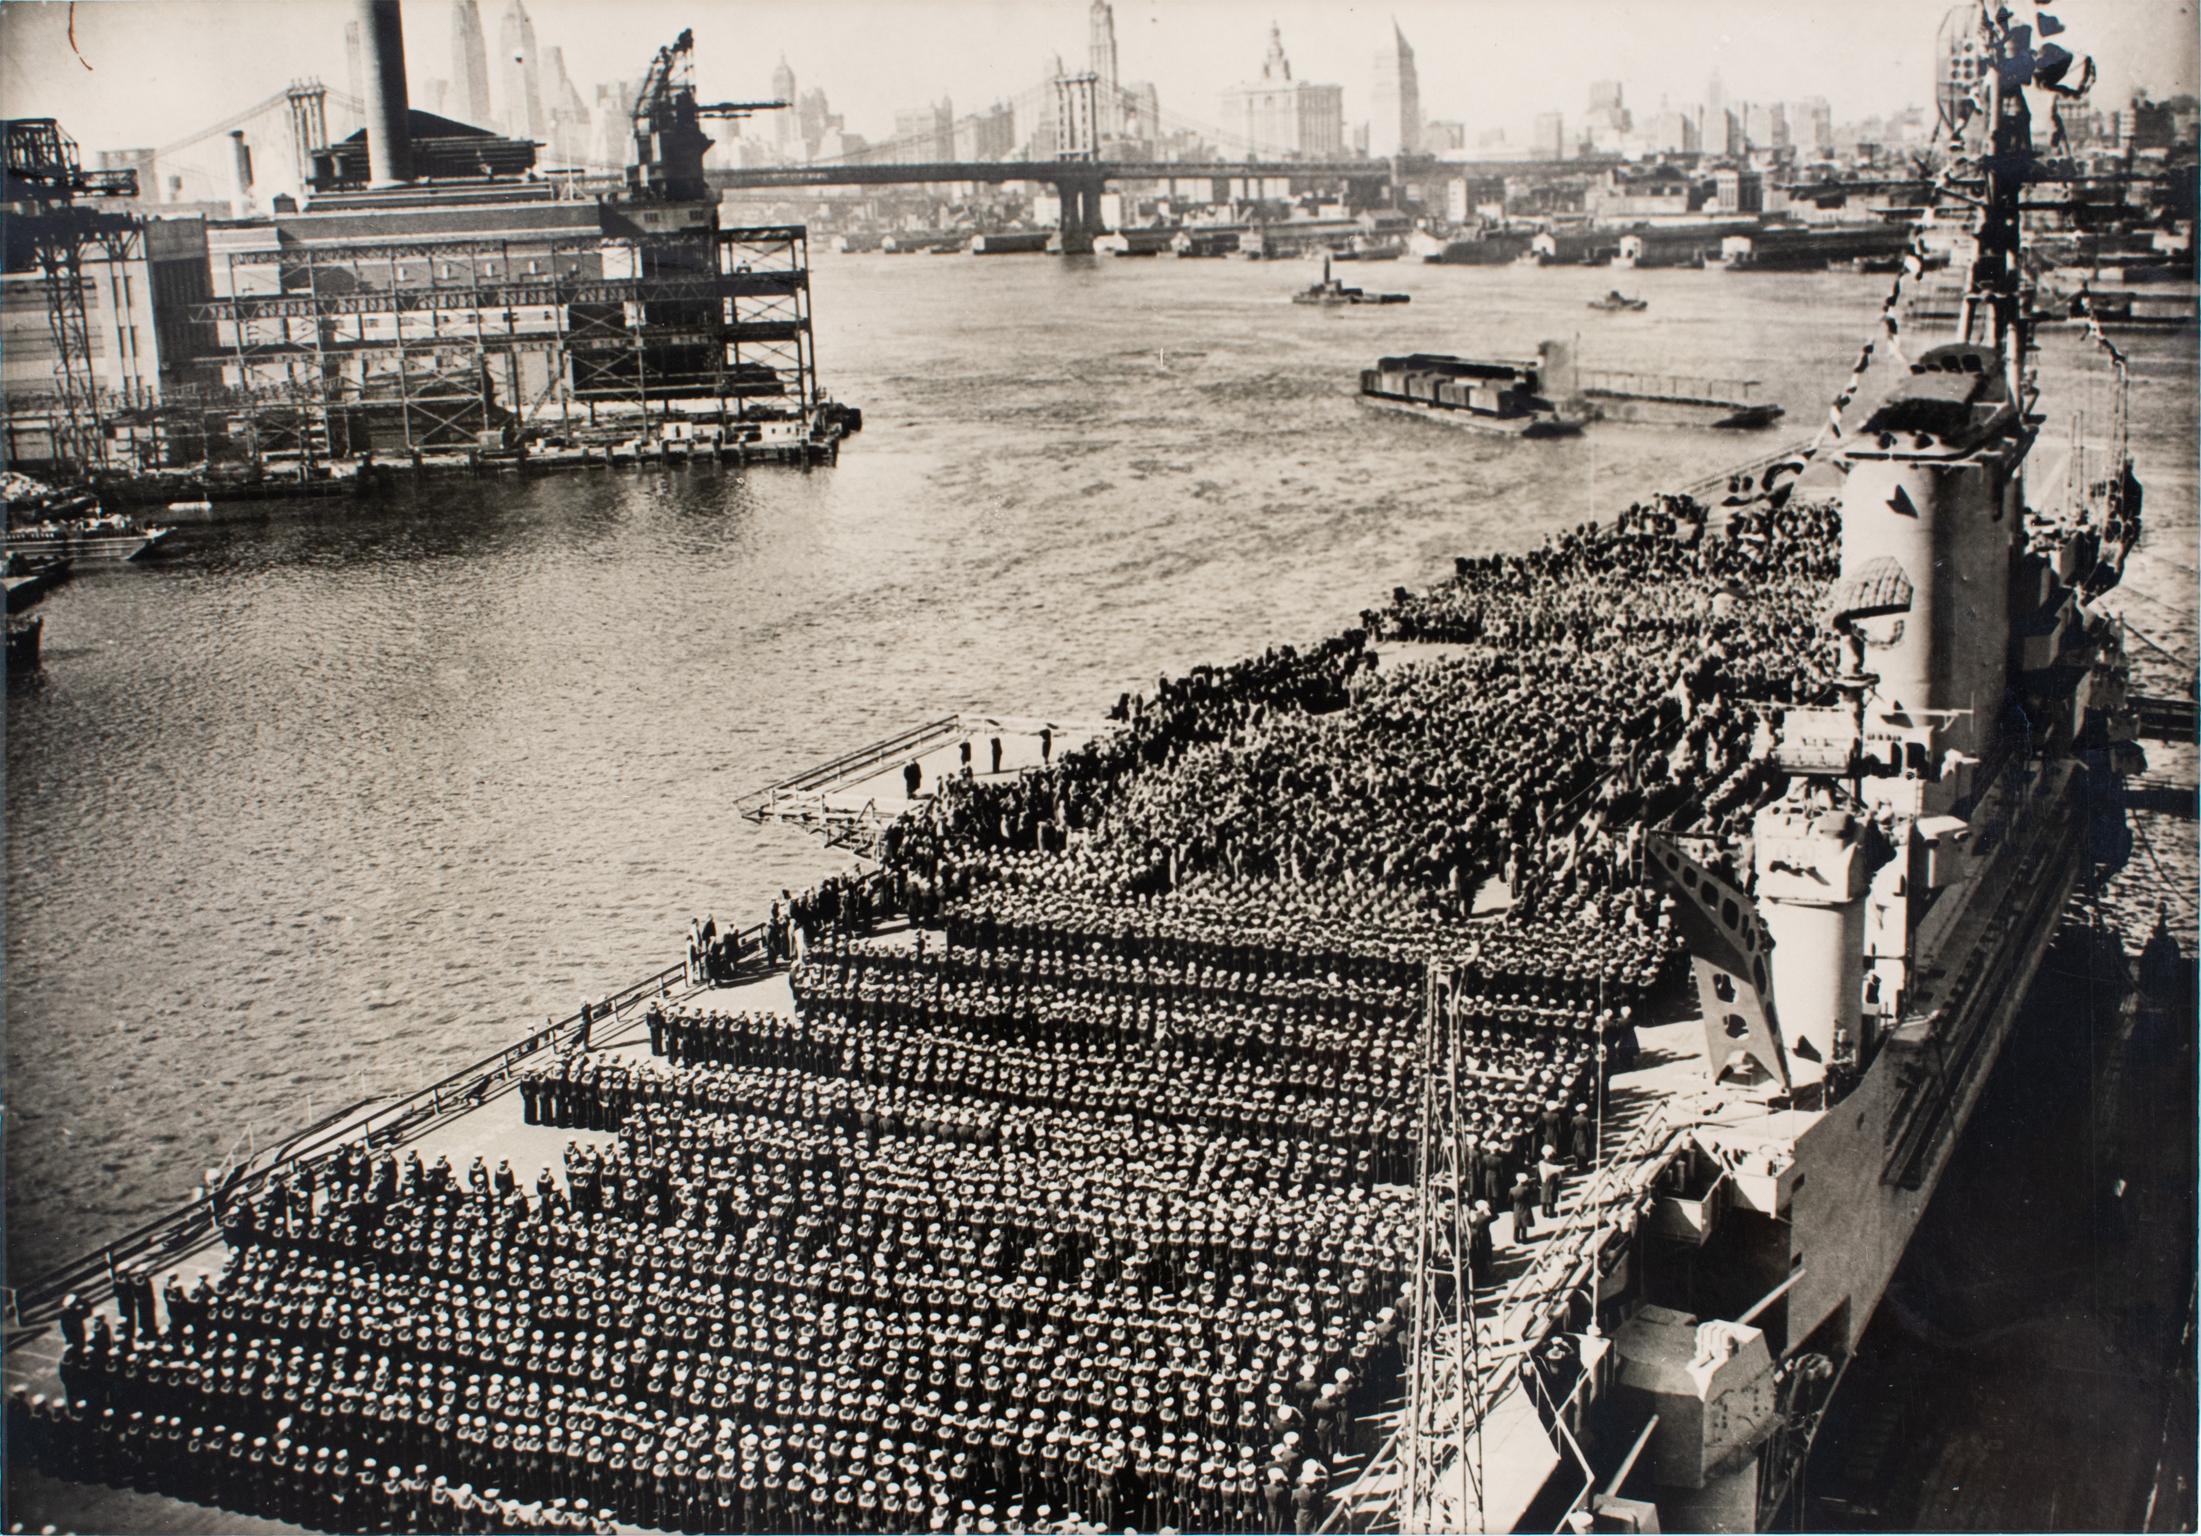 Photographie originale en noir et blanc à la gélatine argentique réalisée par Associated Press Photo. Les porte-avions USS Roosevelt sur la rivière Hudson, à New York, lors de la journée de la marine en 1945.
Caractéristiques :
Photographie